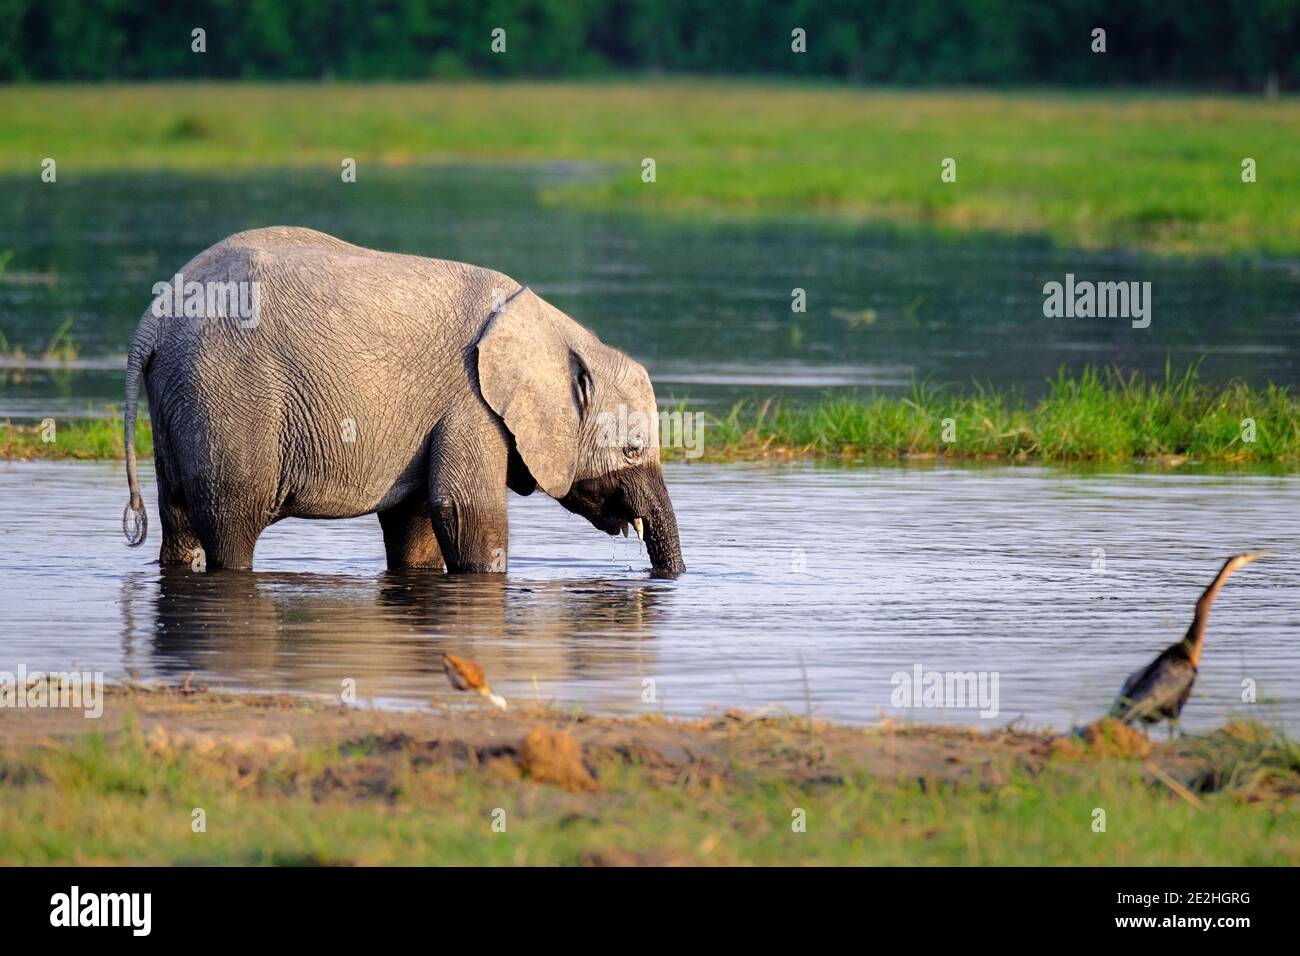 Bébé éléphant, Loxodonta africana, dans l'eau potable. Okavango Delta, Botswana, Afrique Banque D'Images